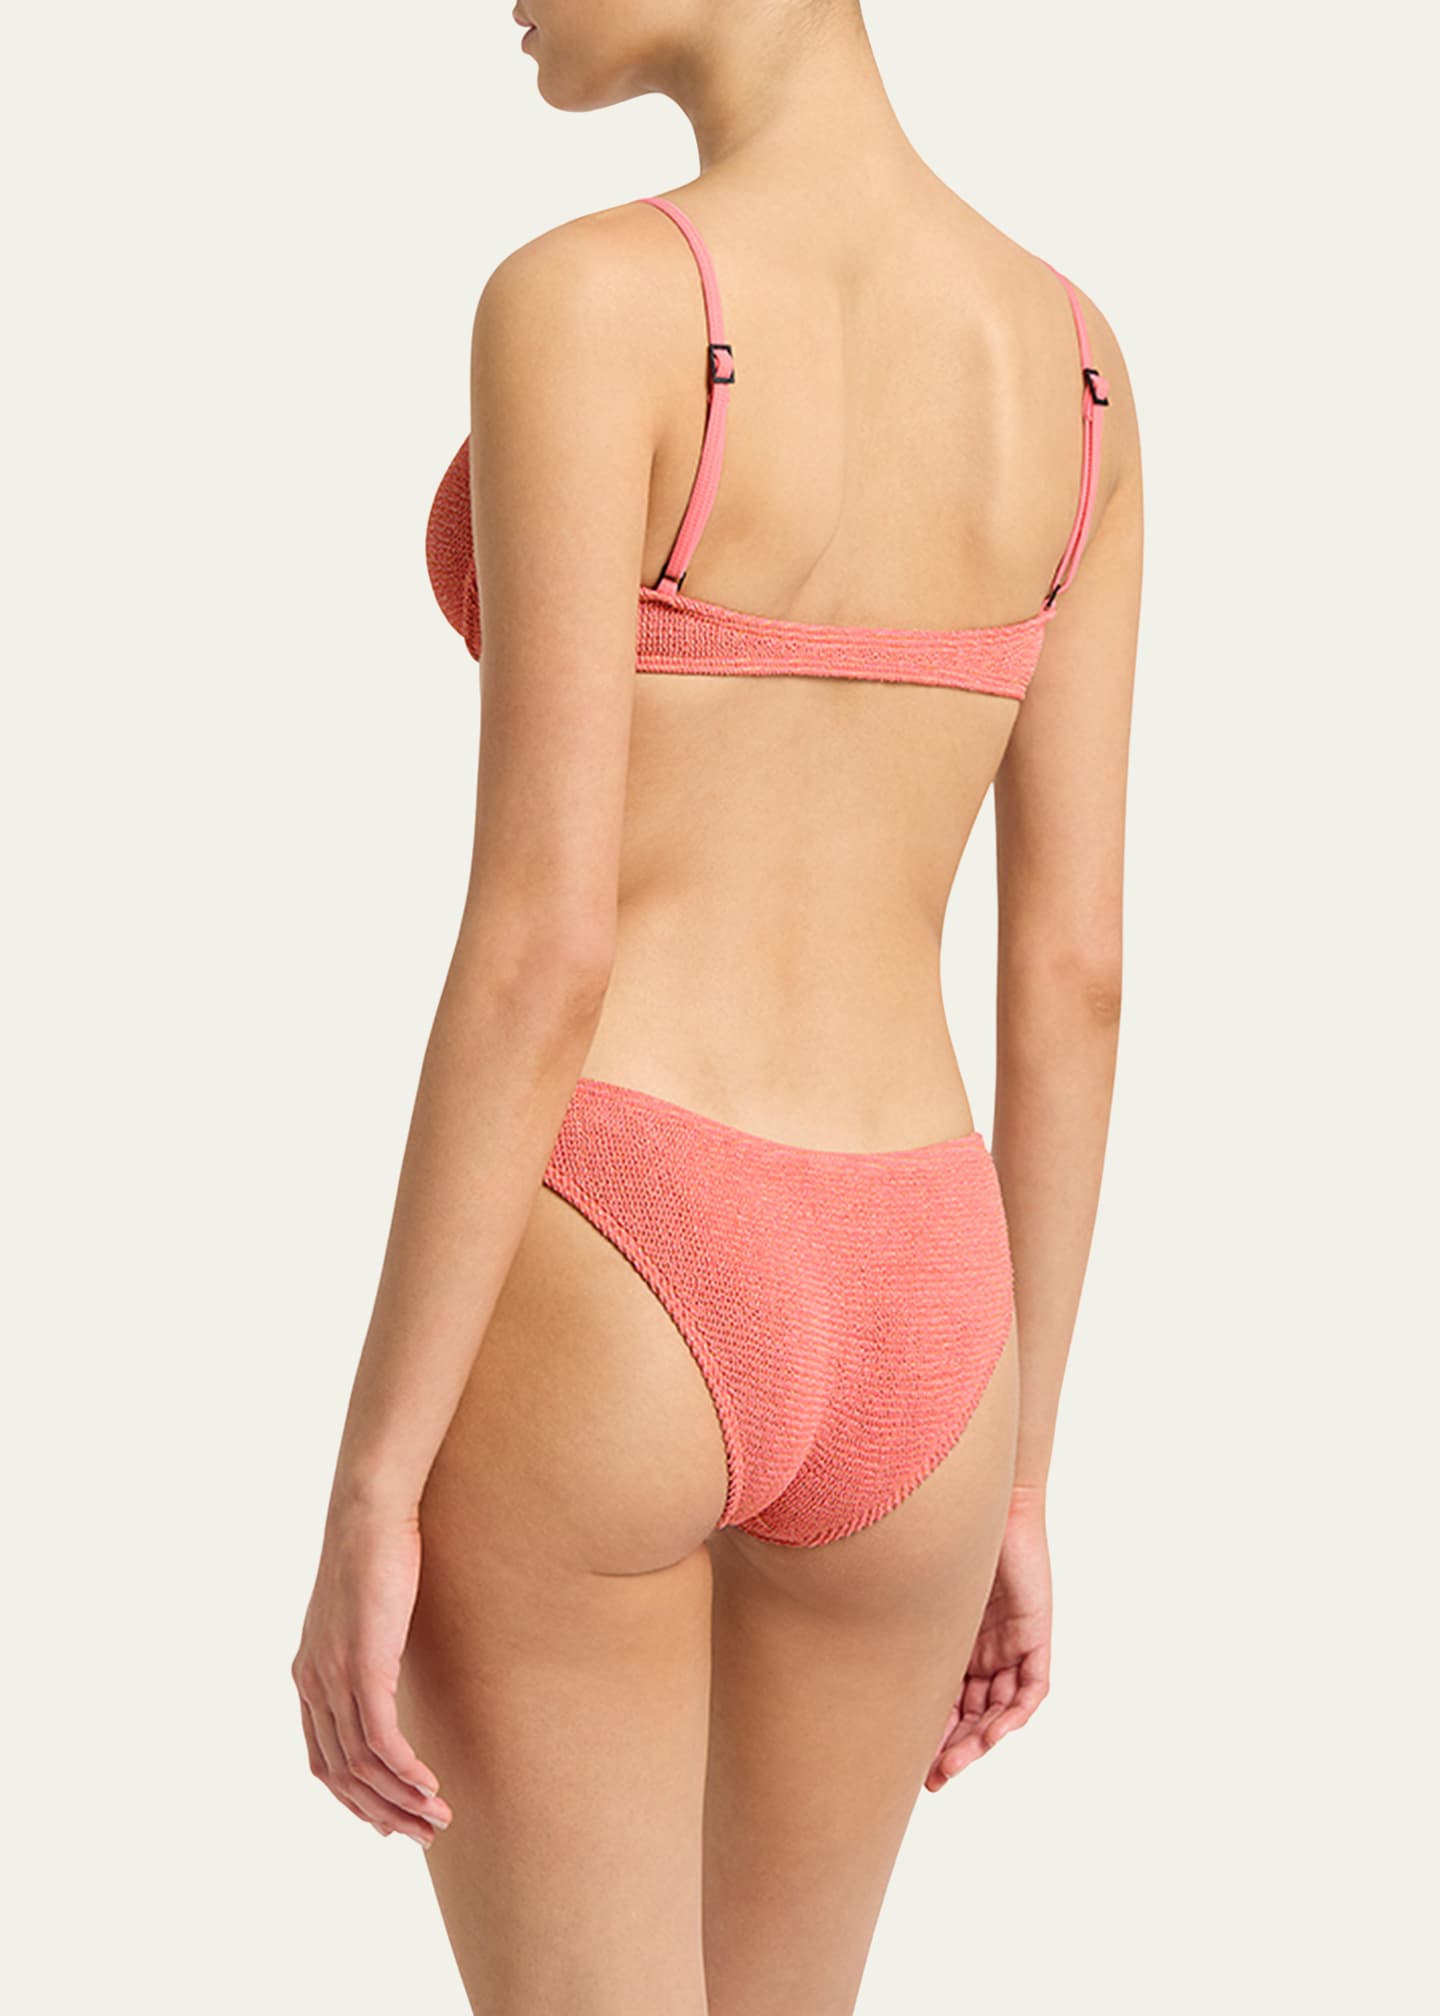 bond-eye swim Gracie Balconette Bikini Top - Bergdorf Goodman